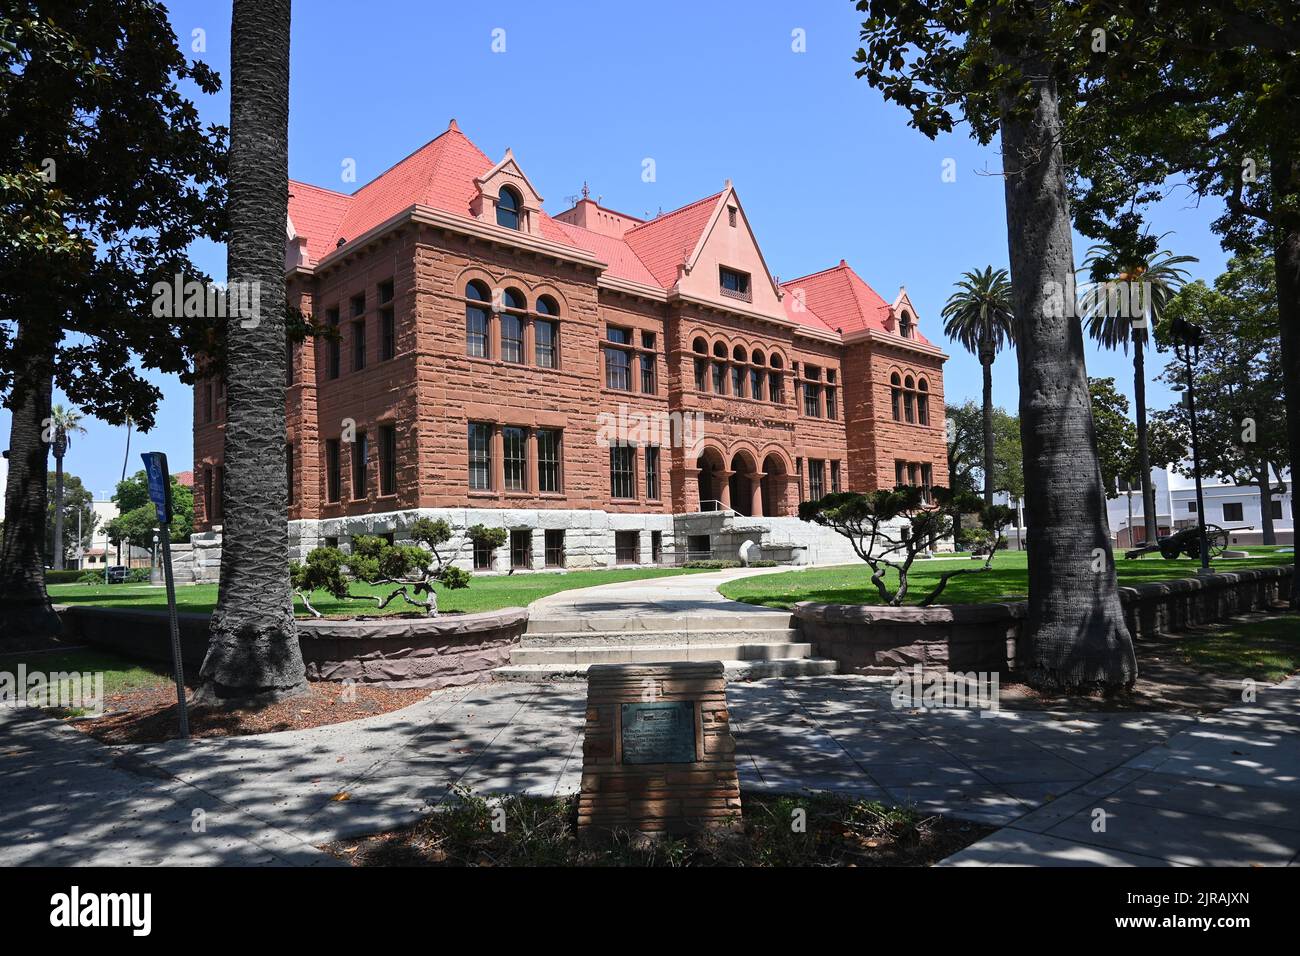 SANTA ANA, CALIFORNIE - 22 AOÛT 2022 : le monument historique du palais de justice du comté d'Orange dans le centre-ville de Santa Ana Banque D'Images